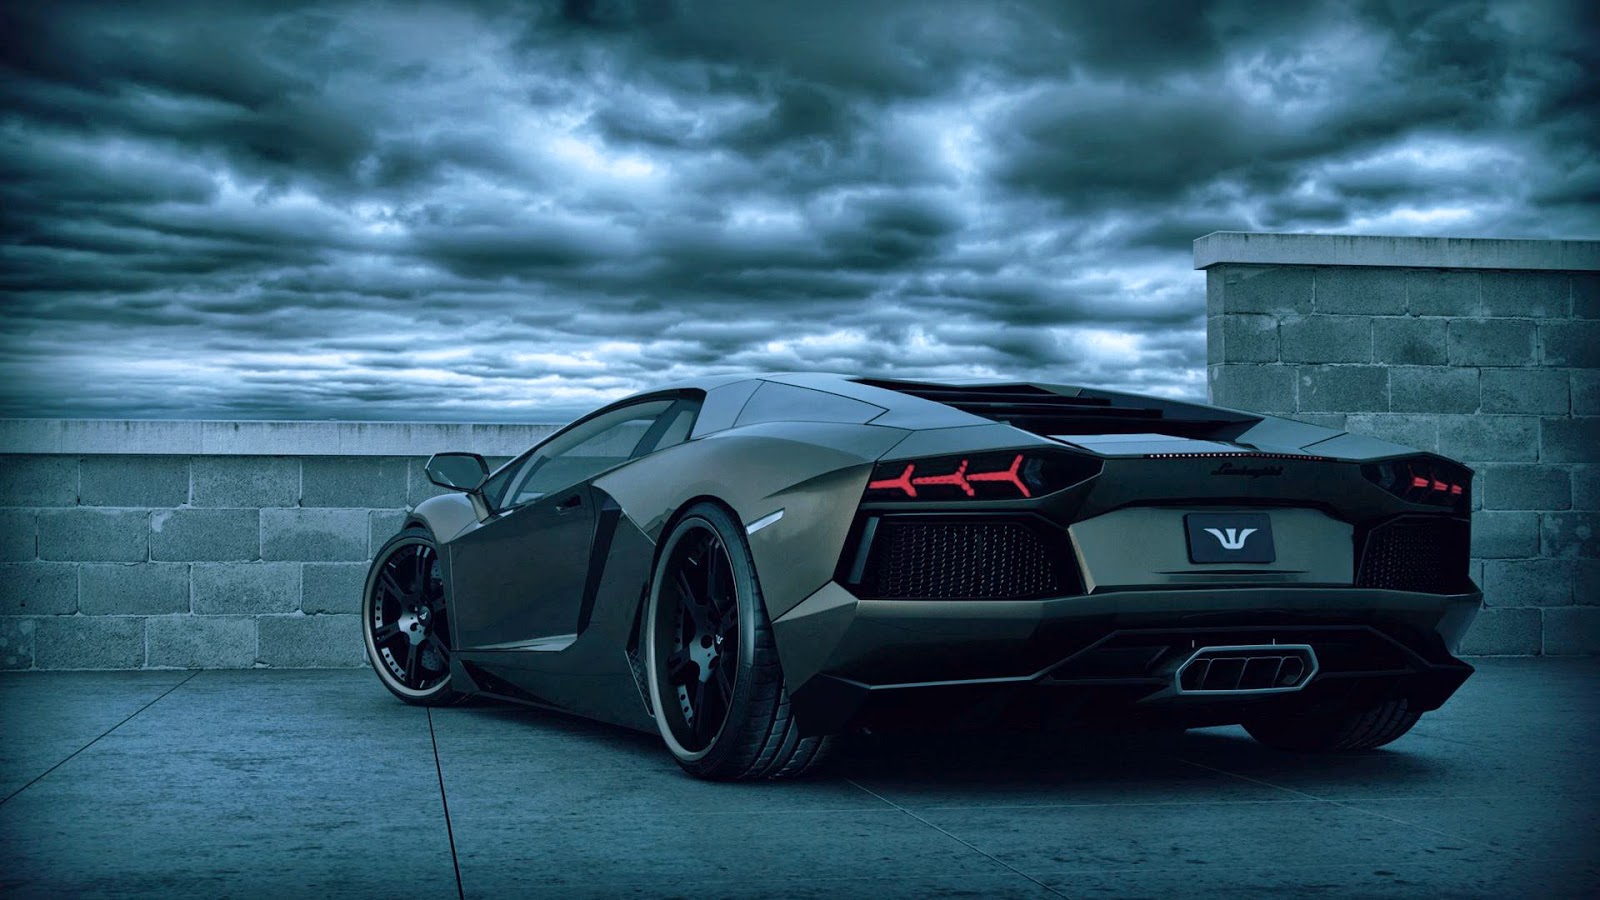 Hình nền siêu xe Lamborghini full HD đẹp nhất - [Kích thước hình ảnh: 1600x900 px]